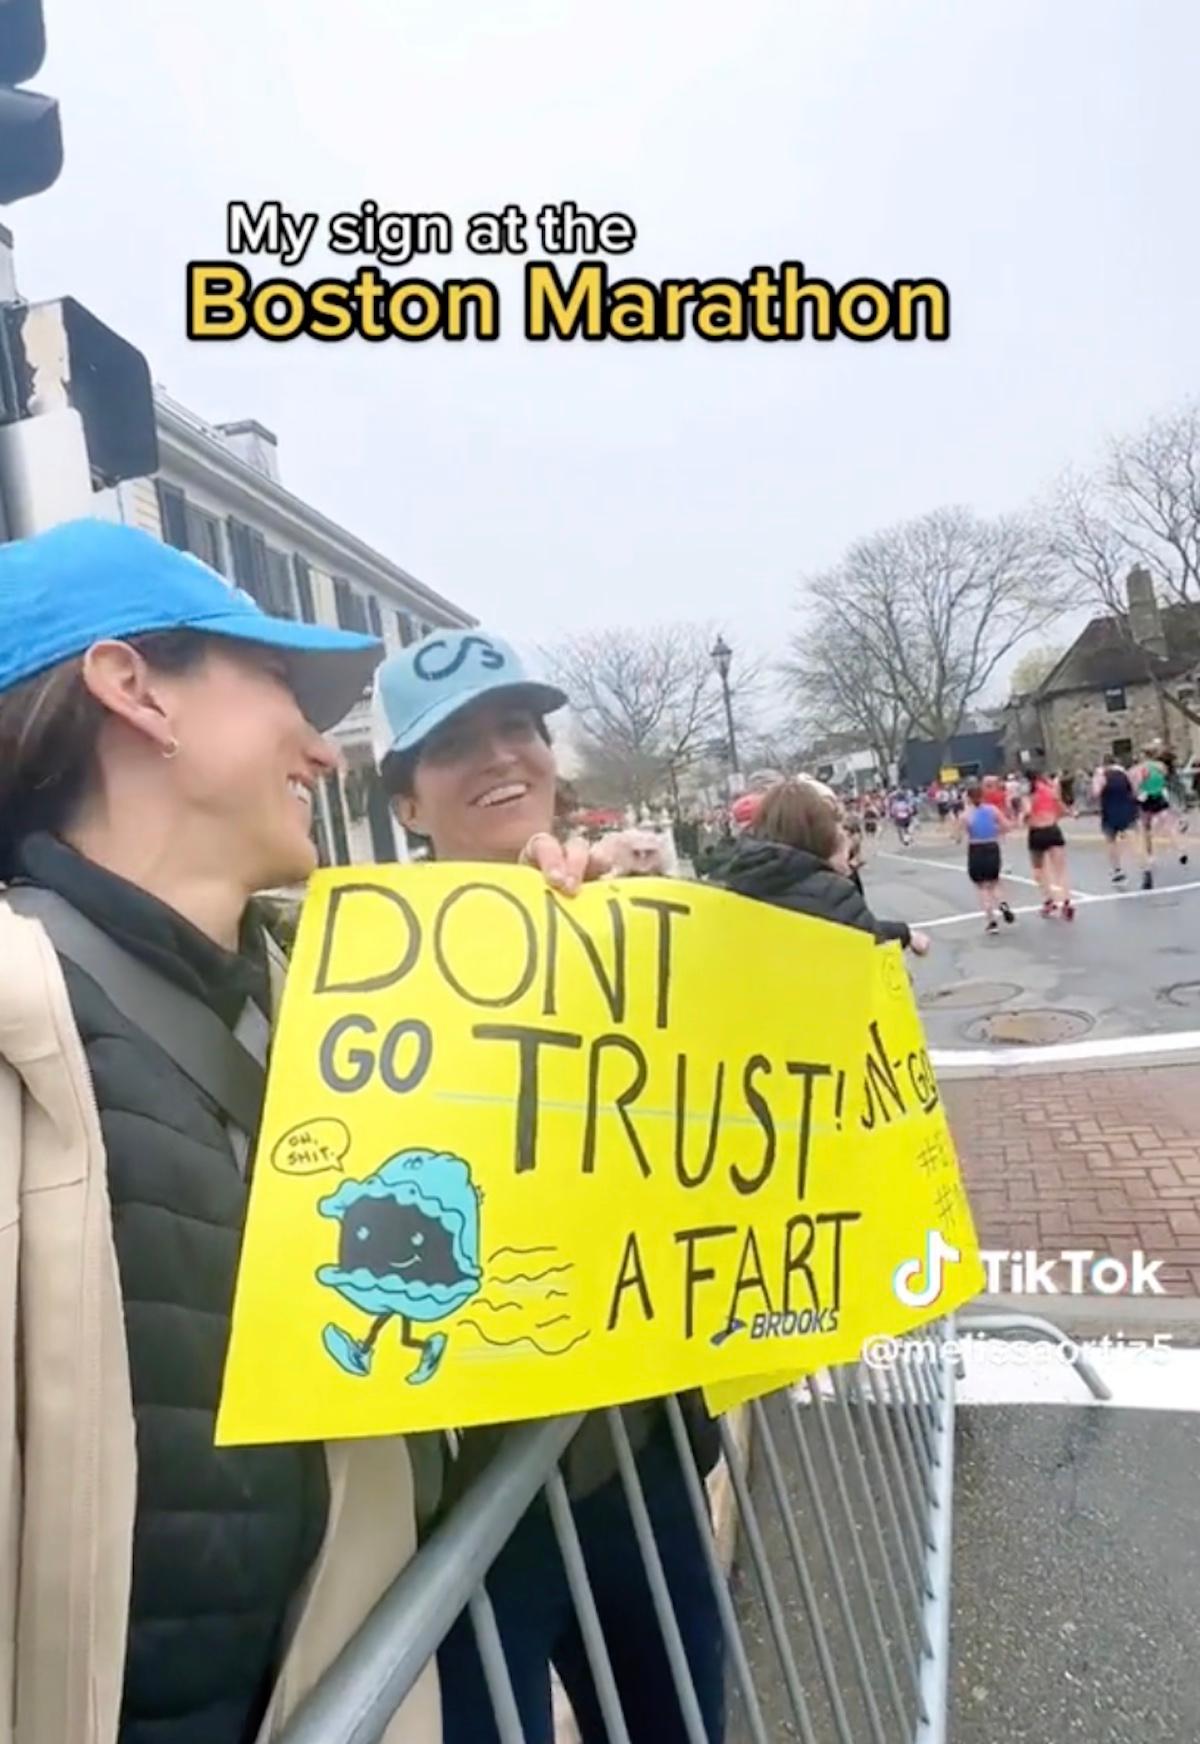 Frau hält ein Schild mit der Aufschrift "Trau keinem Furz" bei einem Marathon